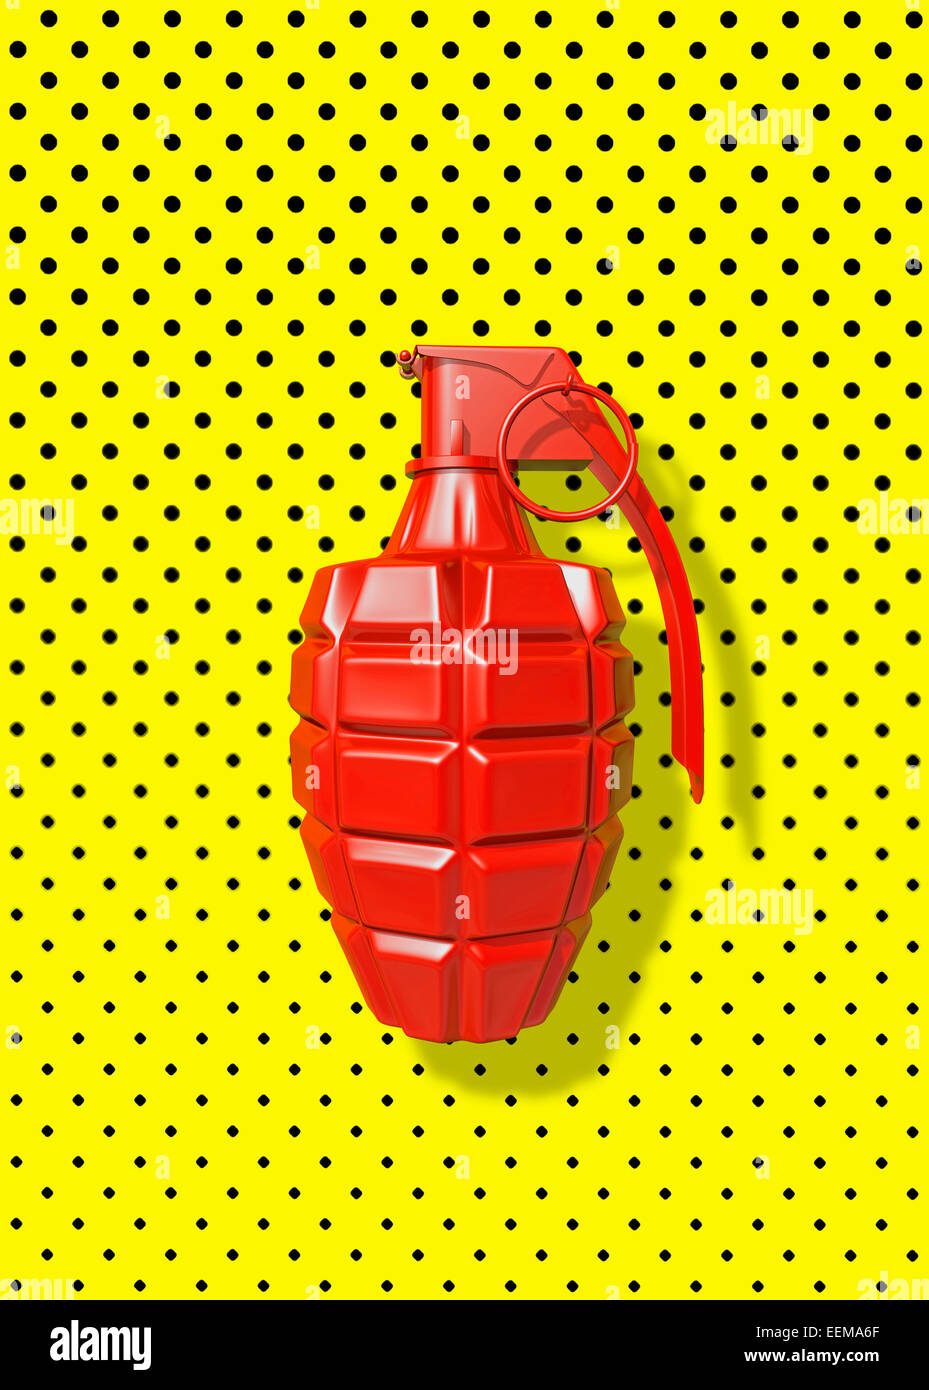 Close up de grenade rouge sur fond bleu à pois Banque D'Images